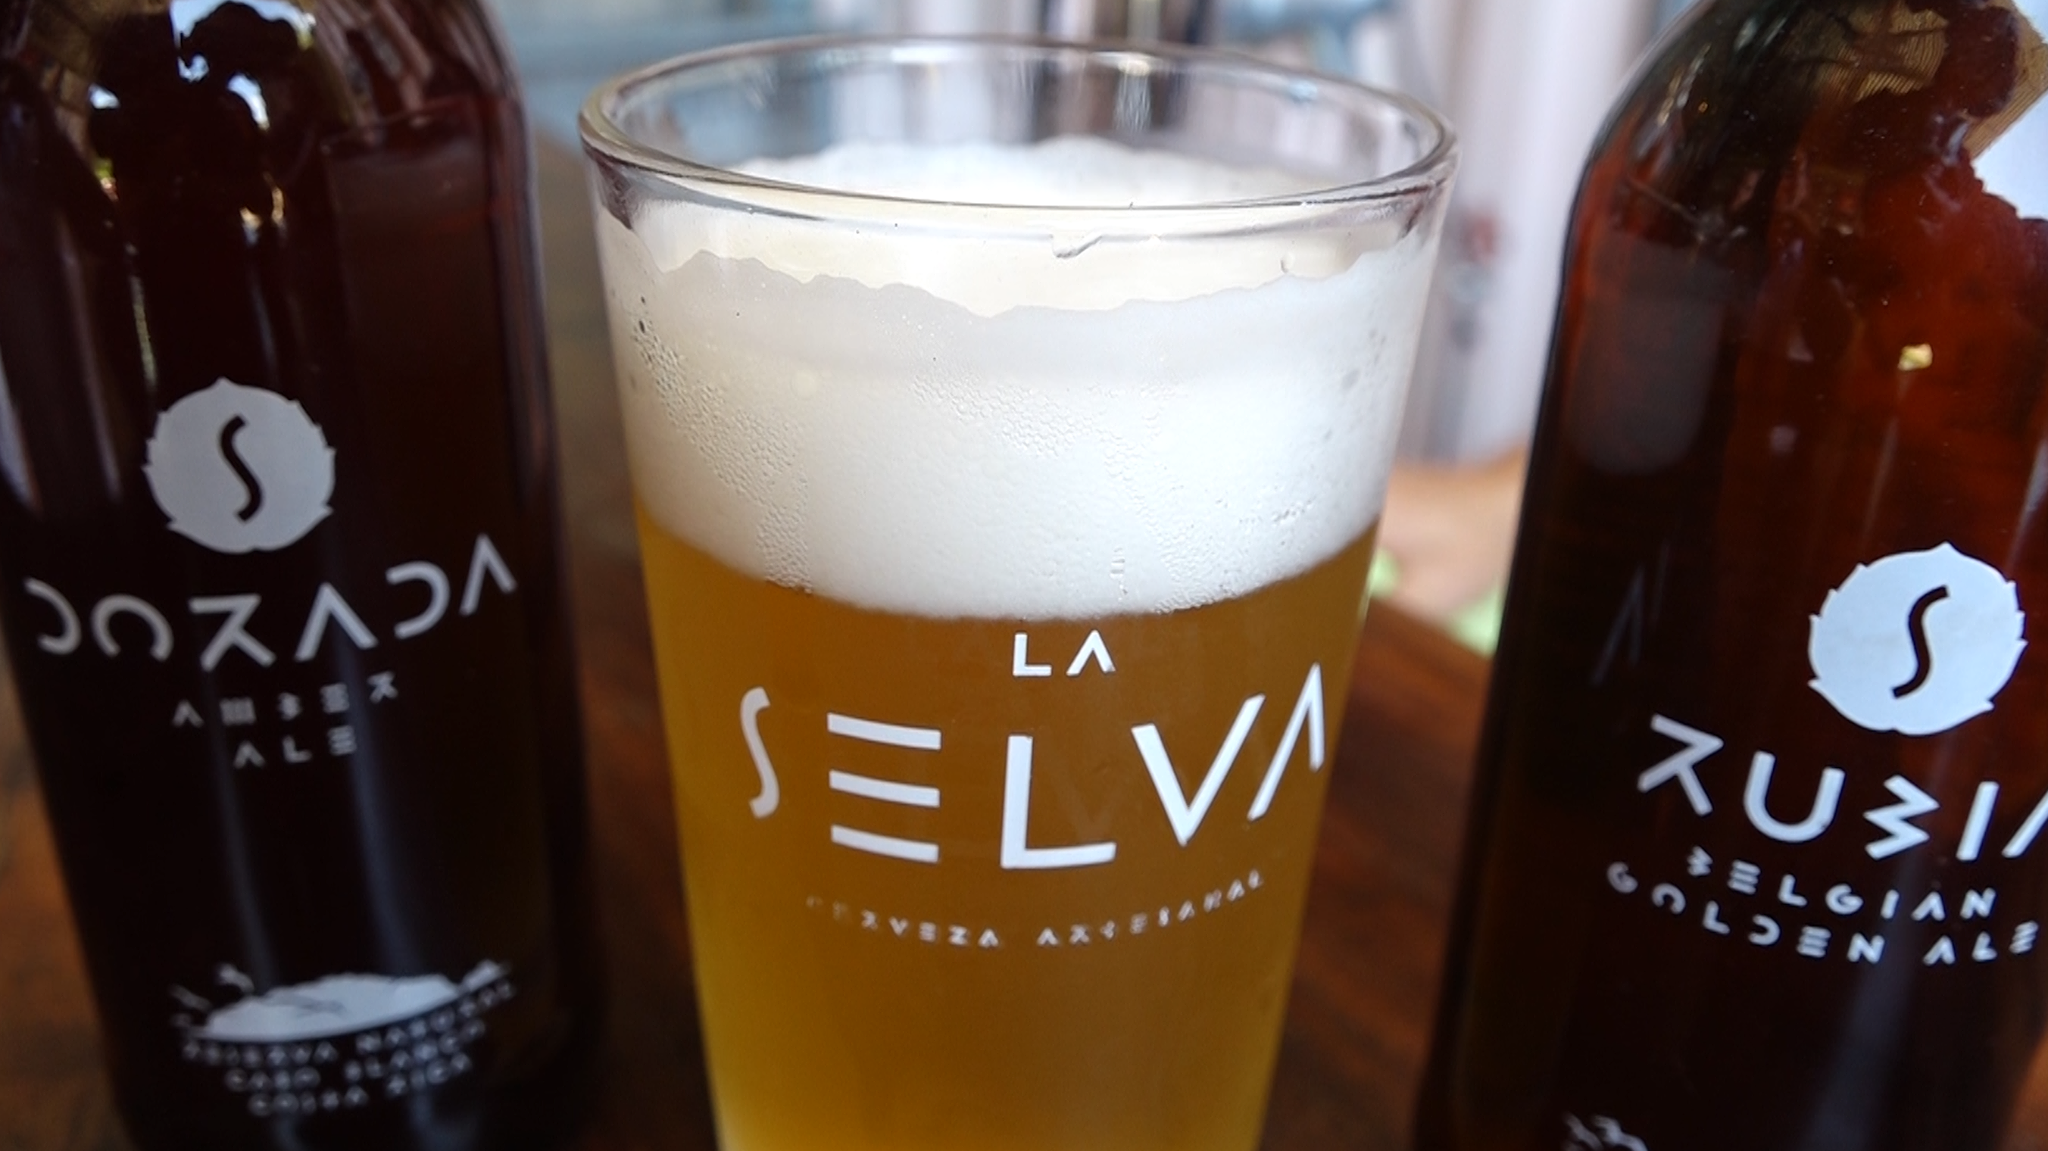 La Selva convierte en cerveza el estilo de vida costarricense